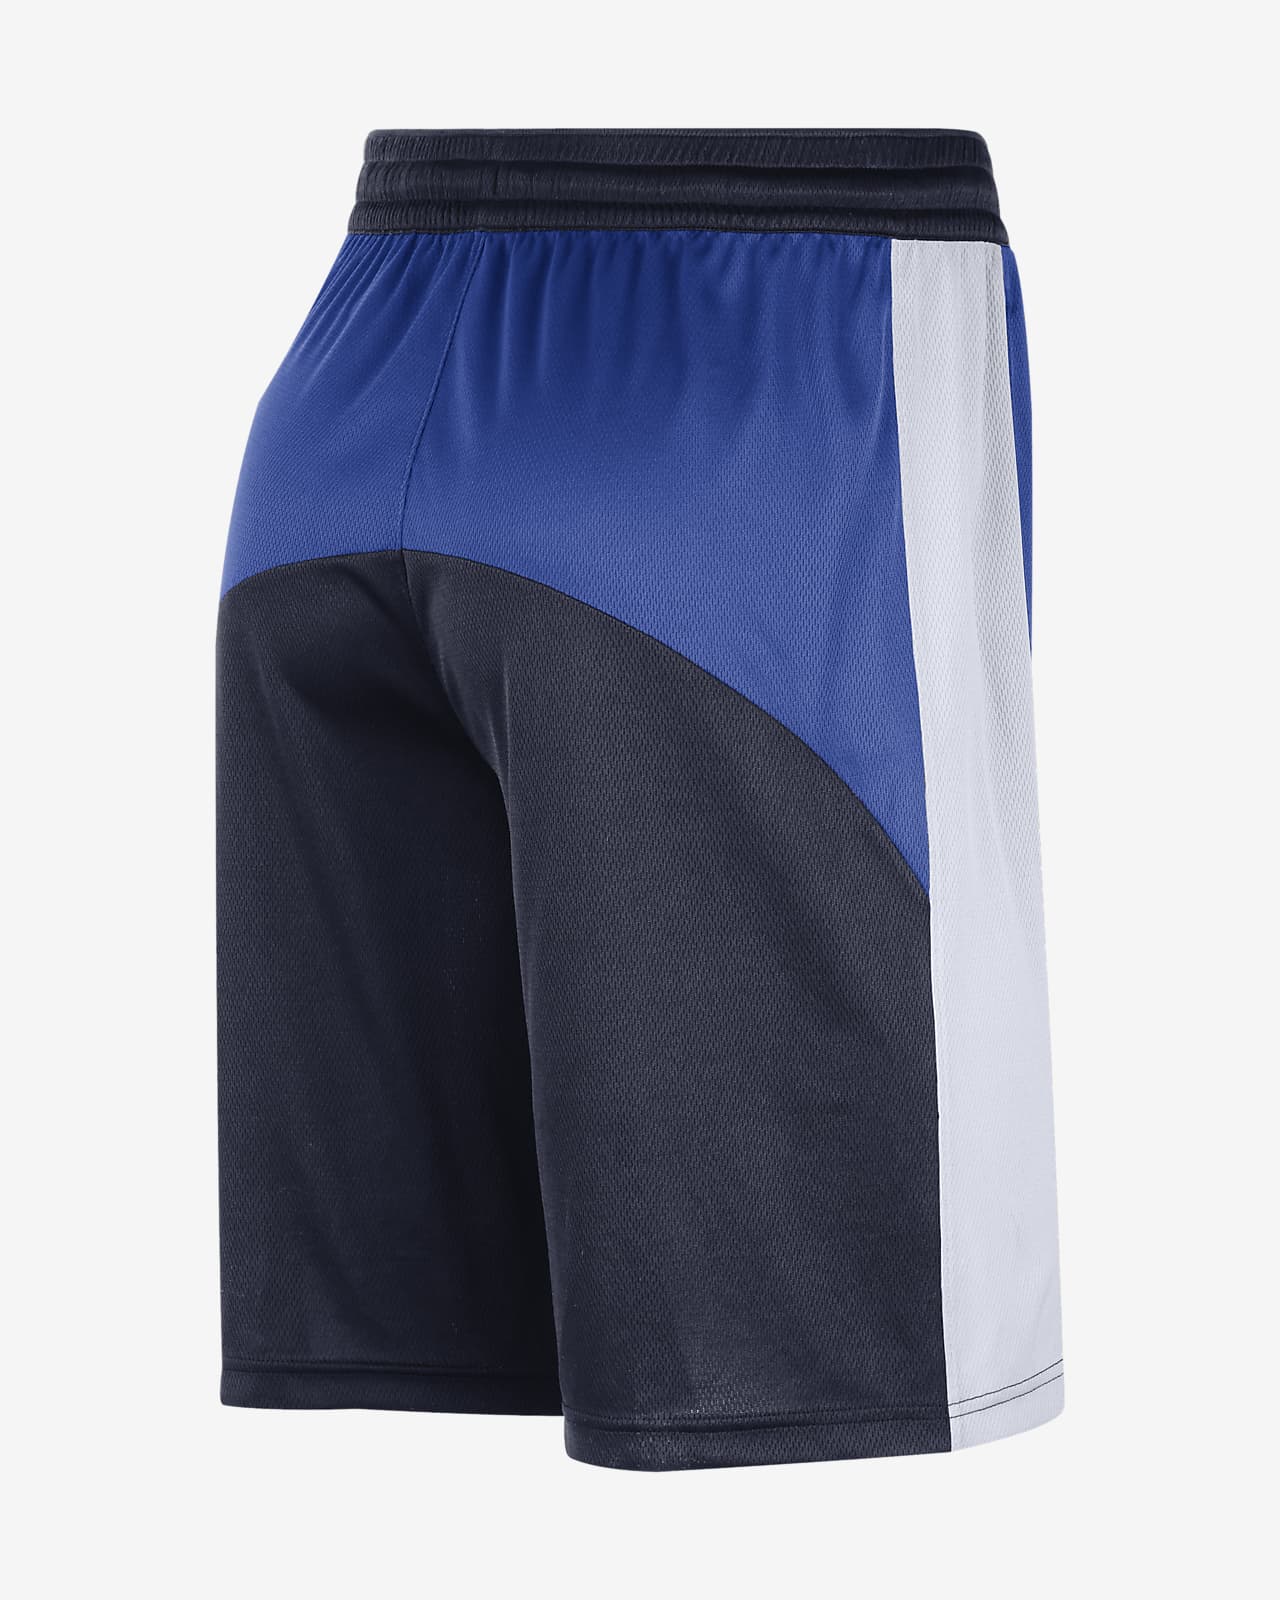 Dallas Mavericks Starting 5 Men's Nike Dri-Fit NBA Shorts